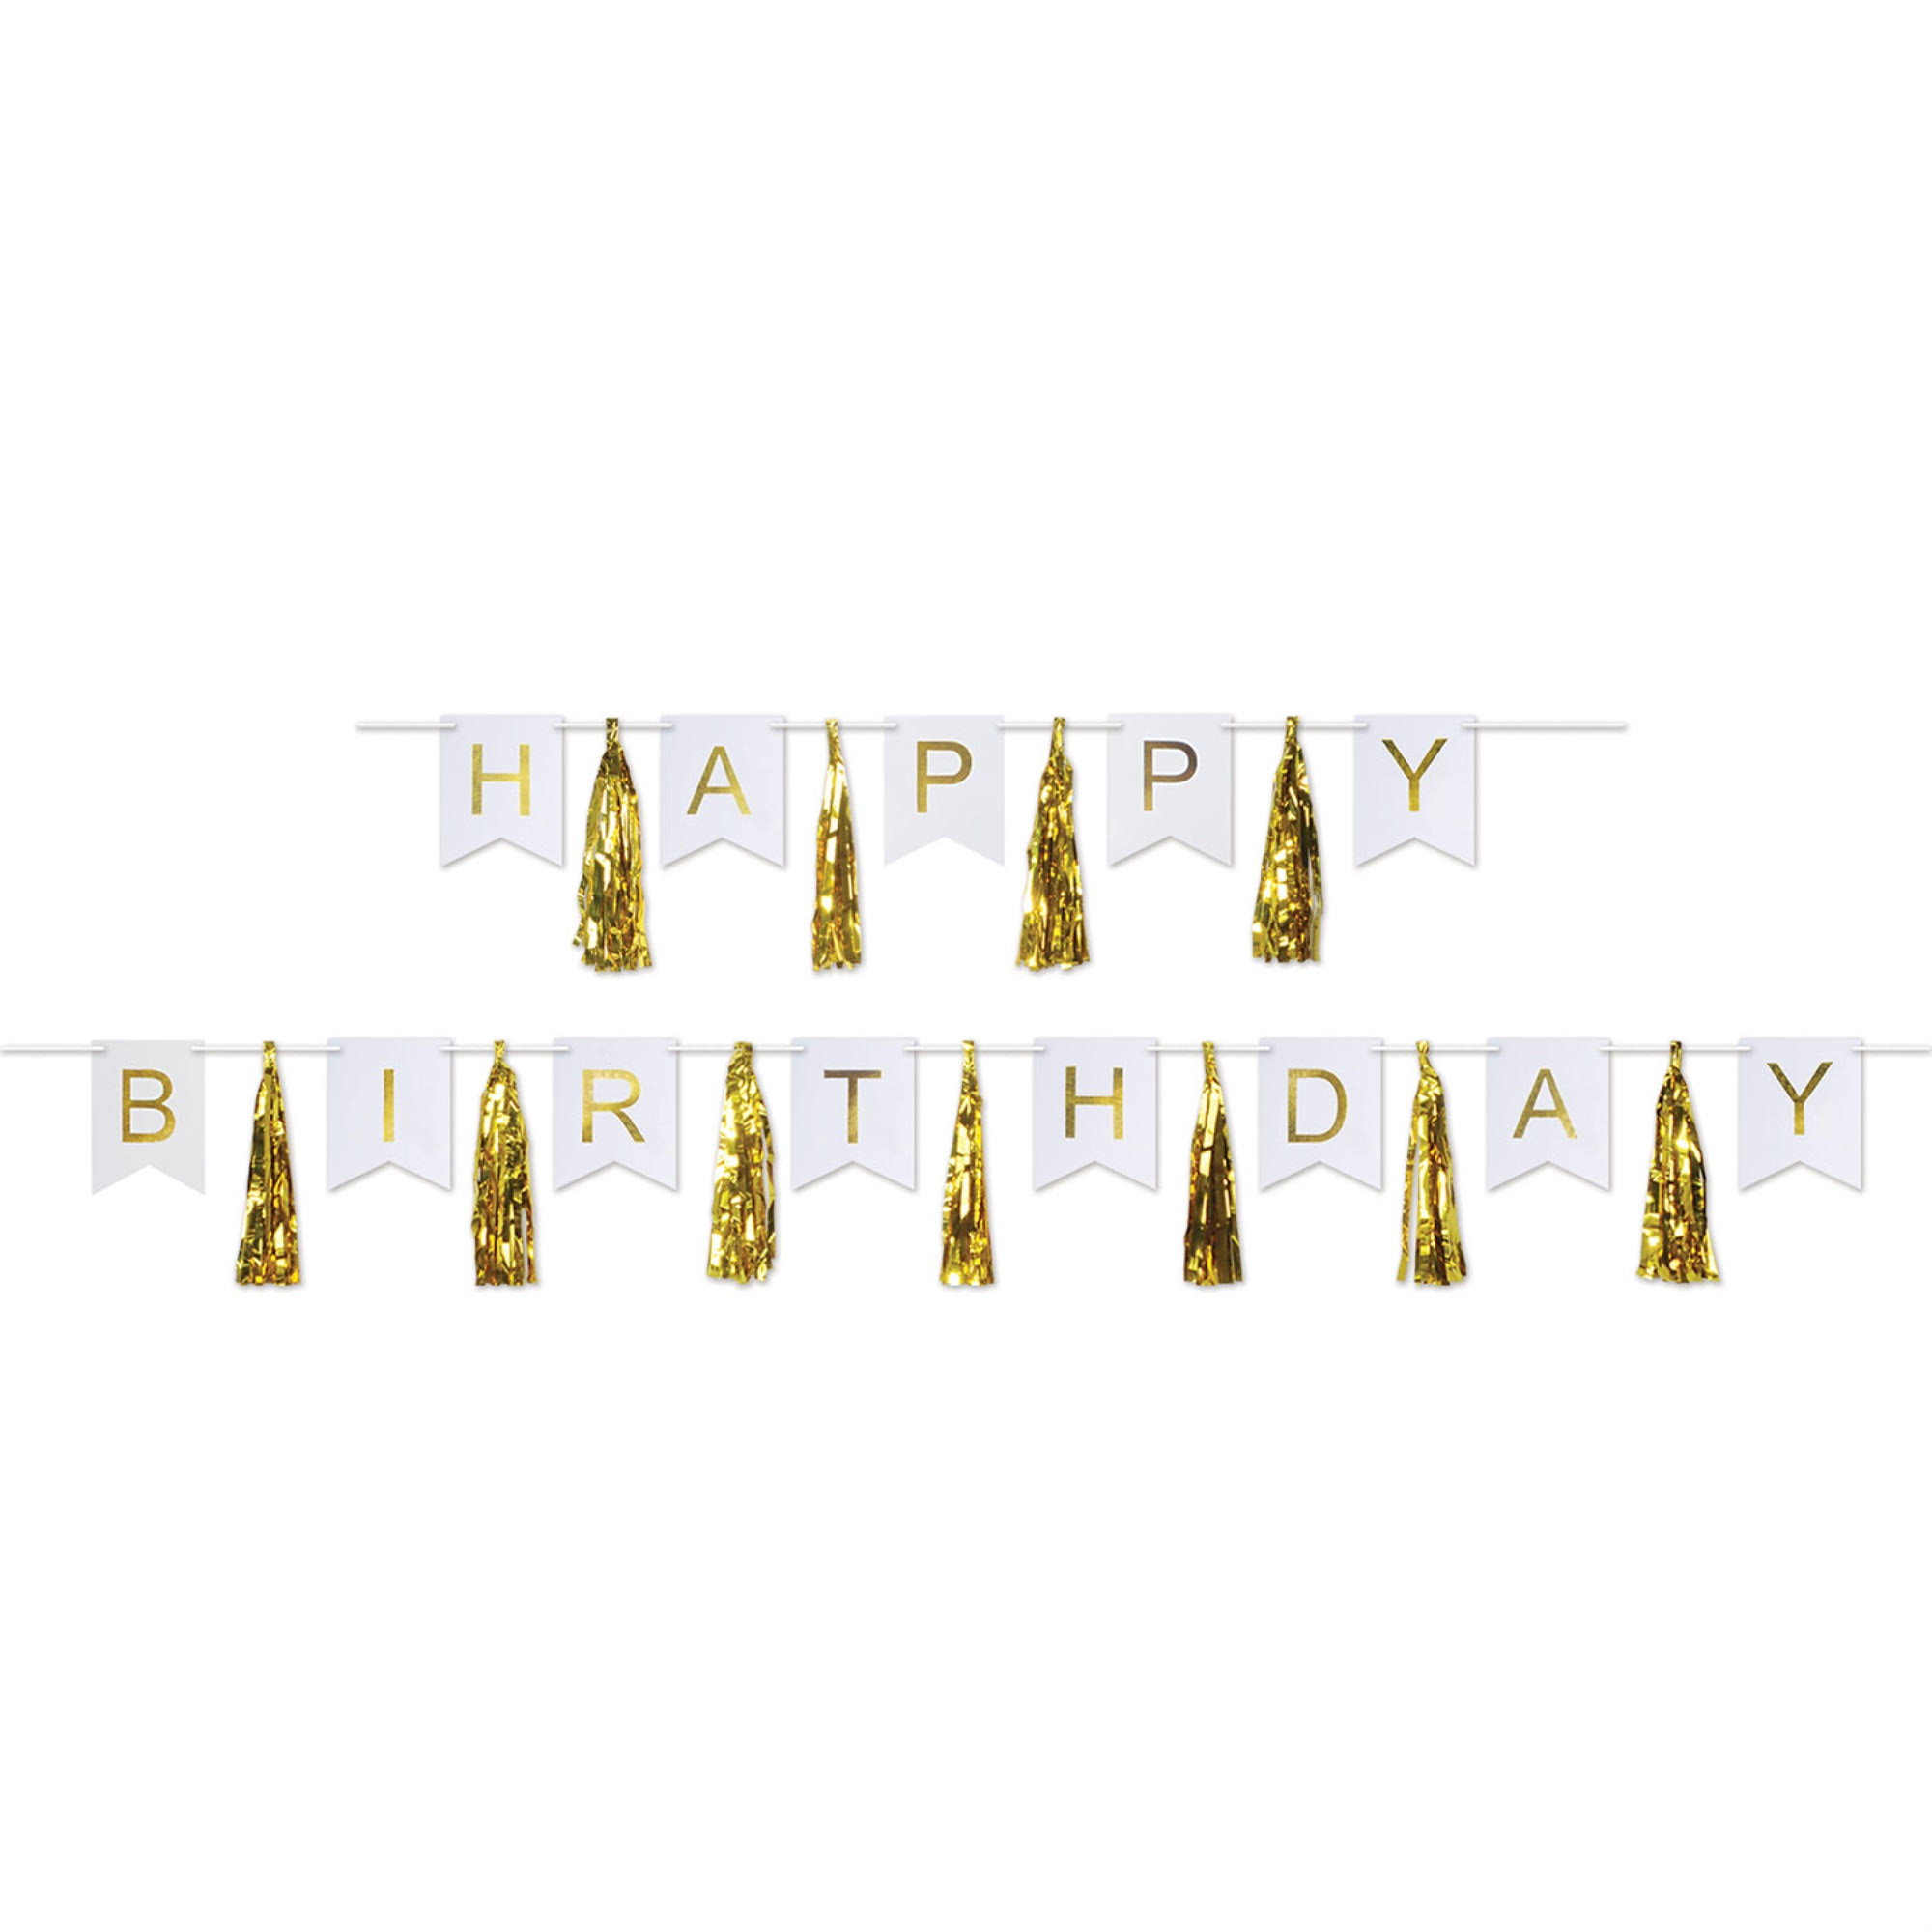 Beistle Birthday Party Supplies Happy Birthday Gold Tassel Streamer